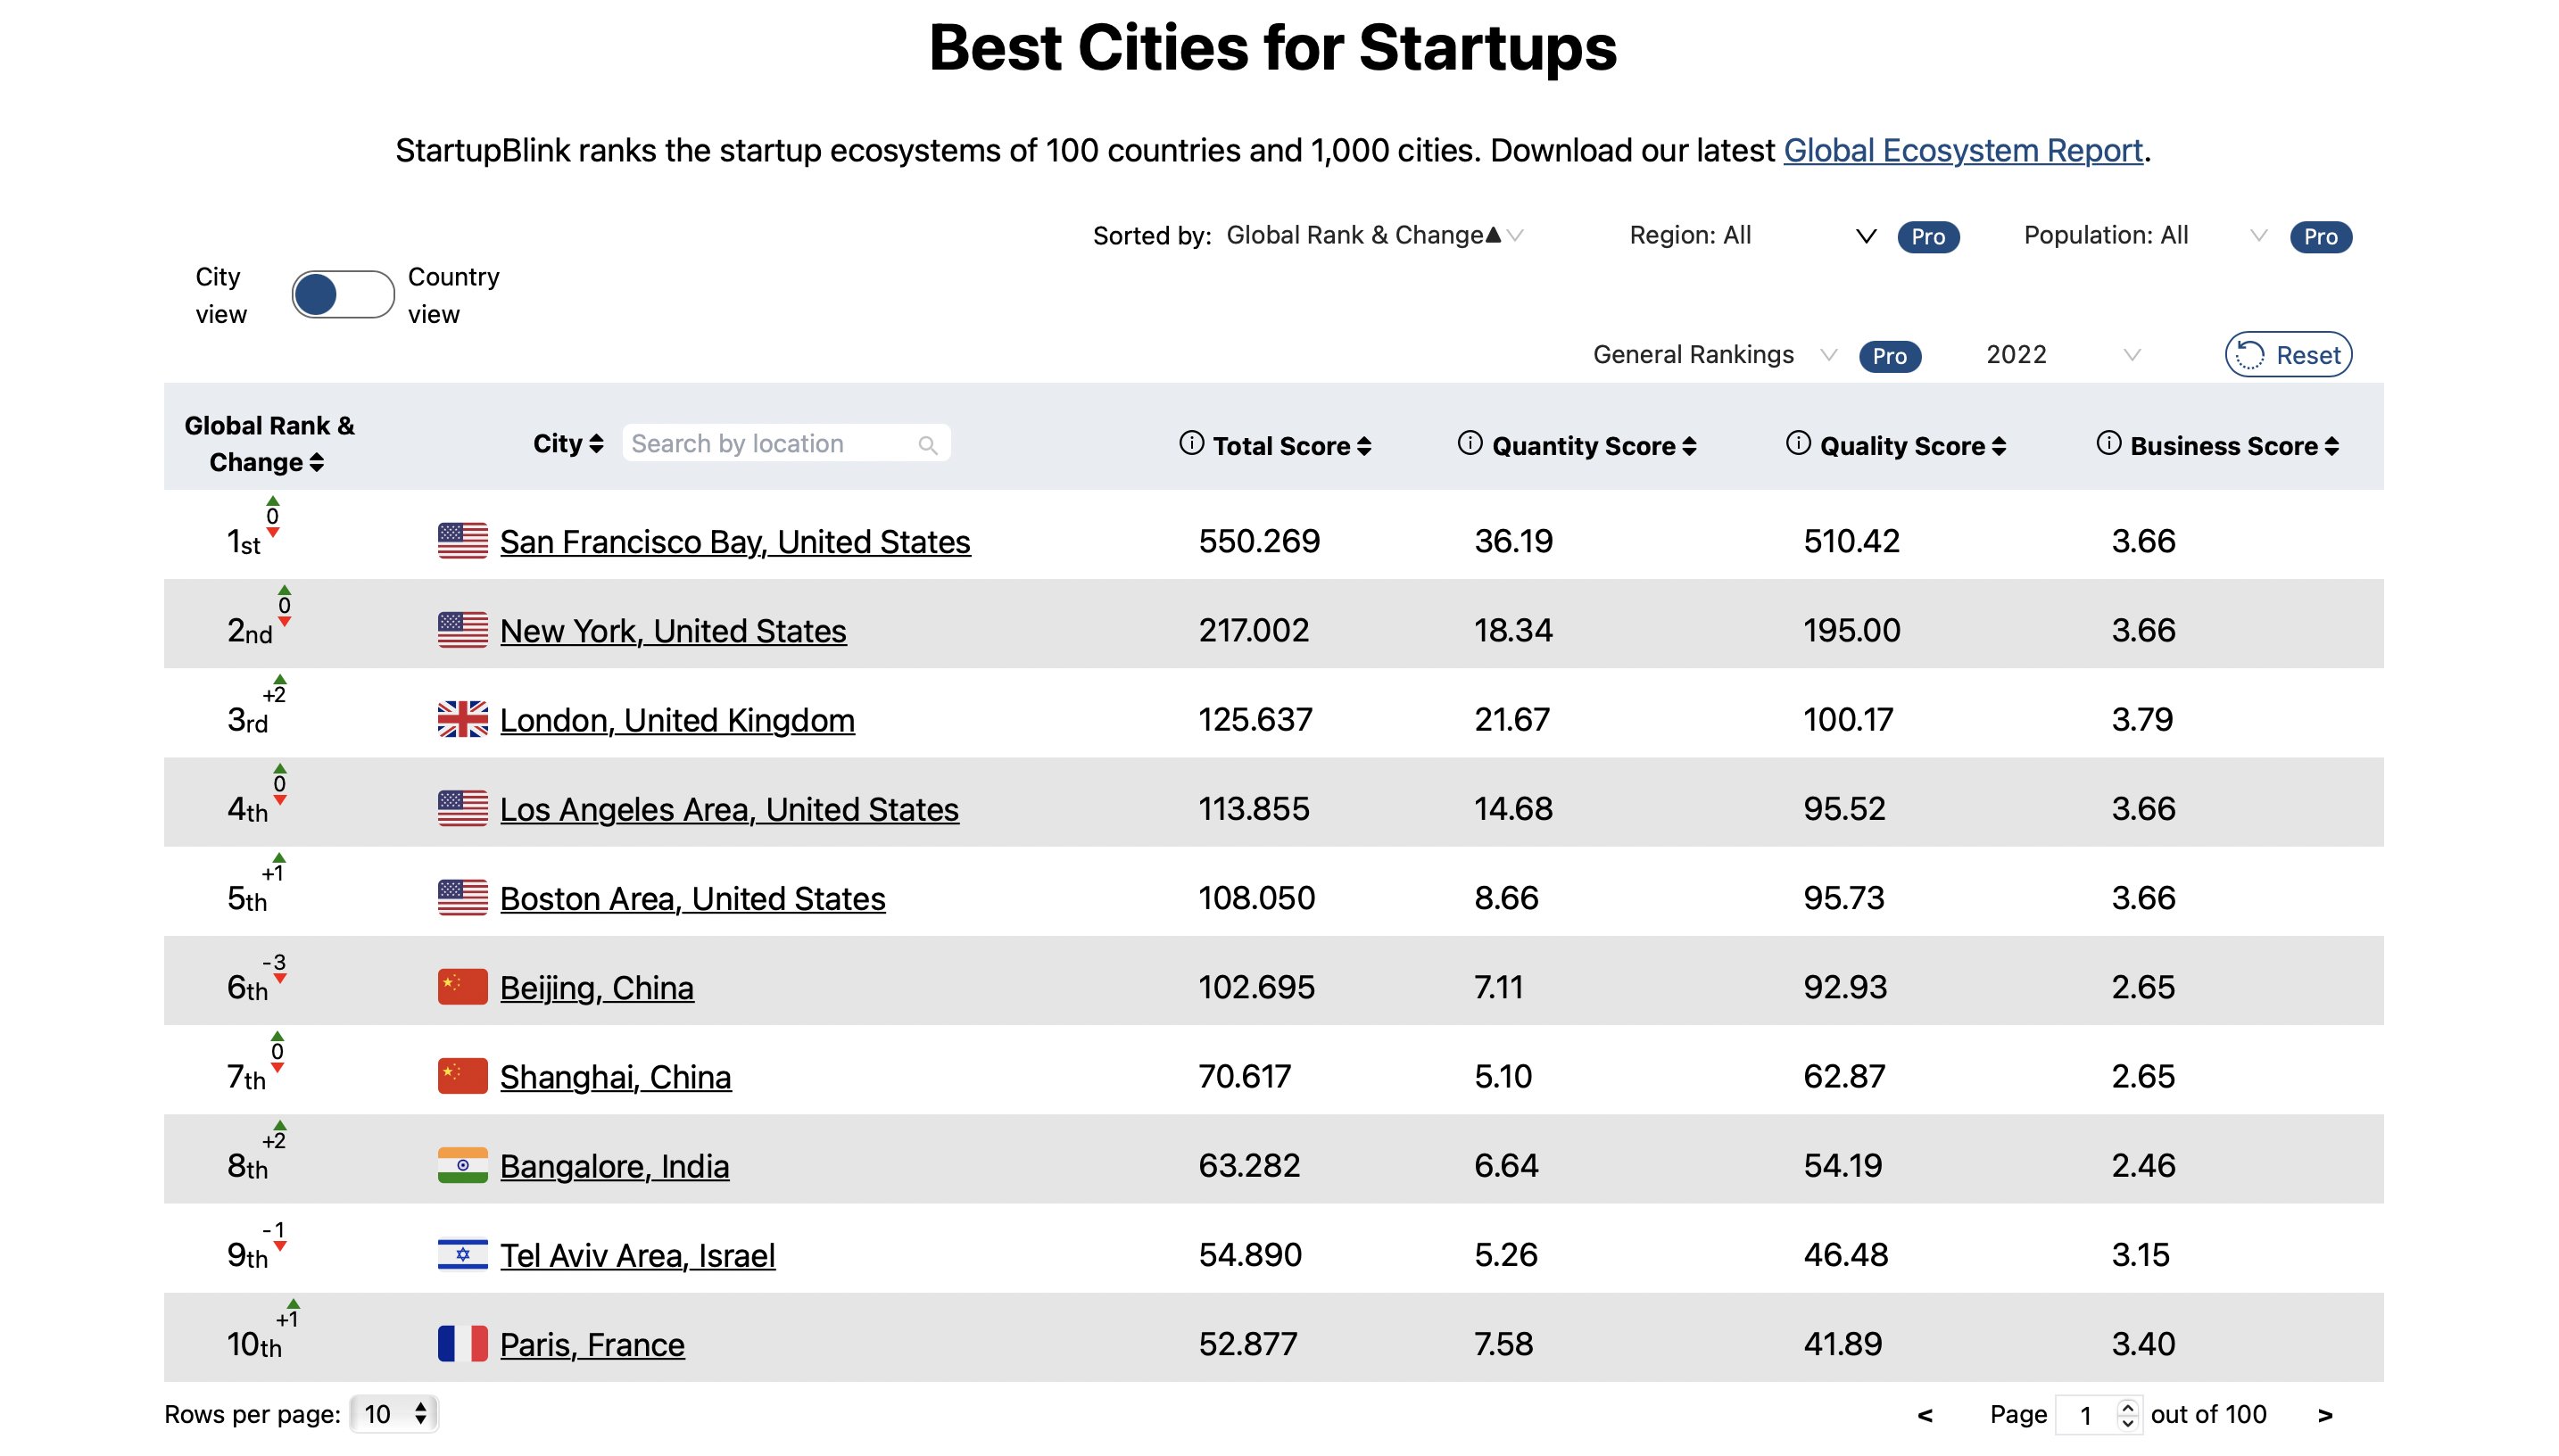 Quelle est la ville la plus startup friendly